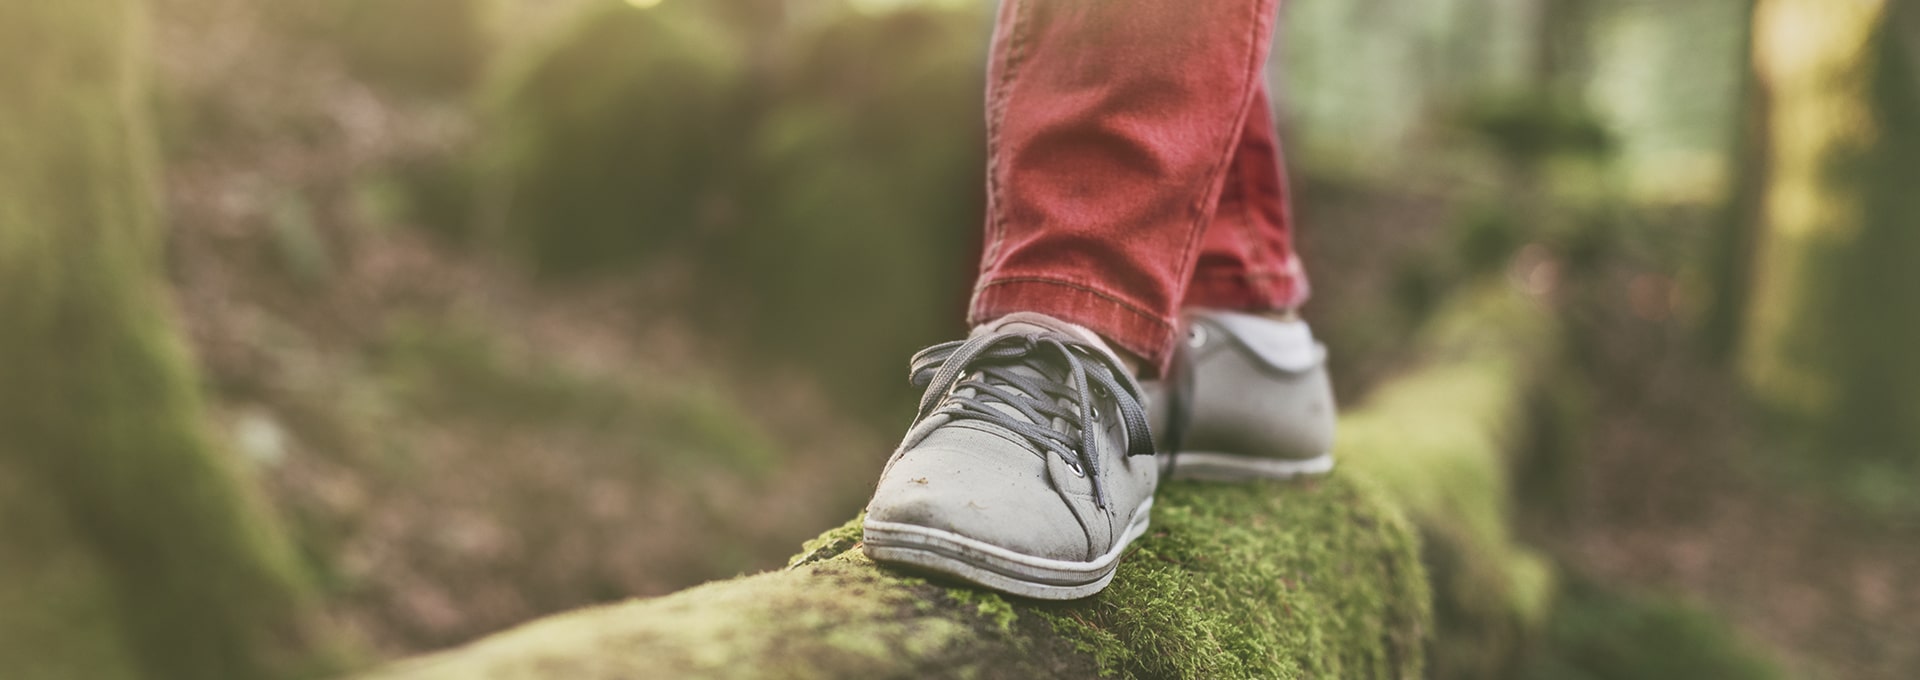 Des pieds portant des chaussures grises en équilibre sur un rondin de bois dans la forêt.